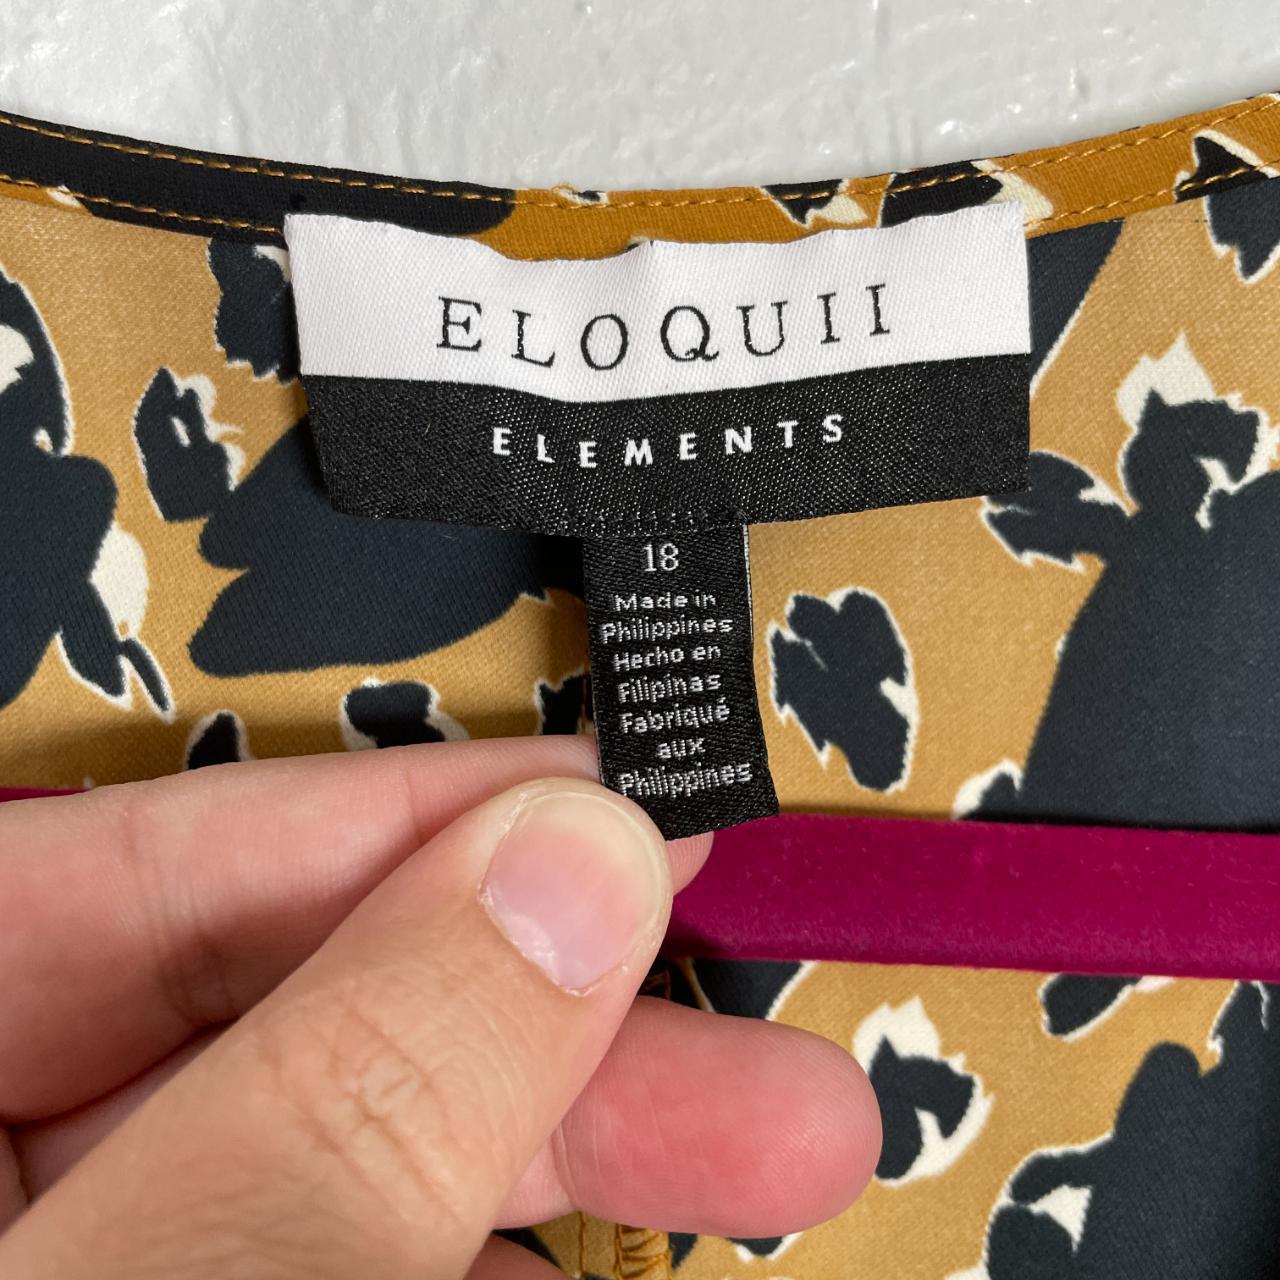 Product Image 3 - Eloquii Elements Plus Size 18